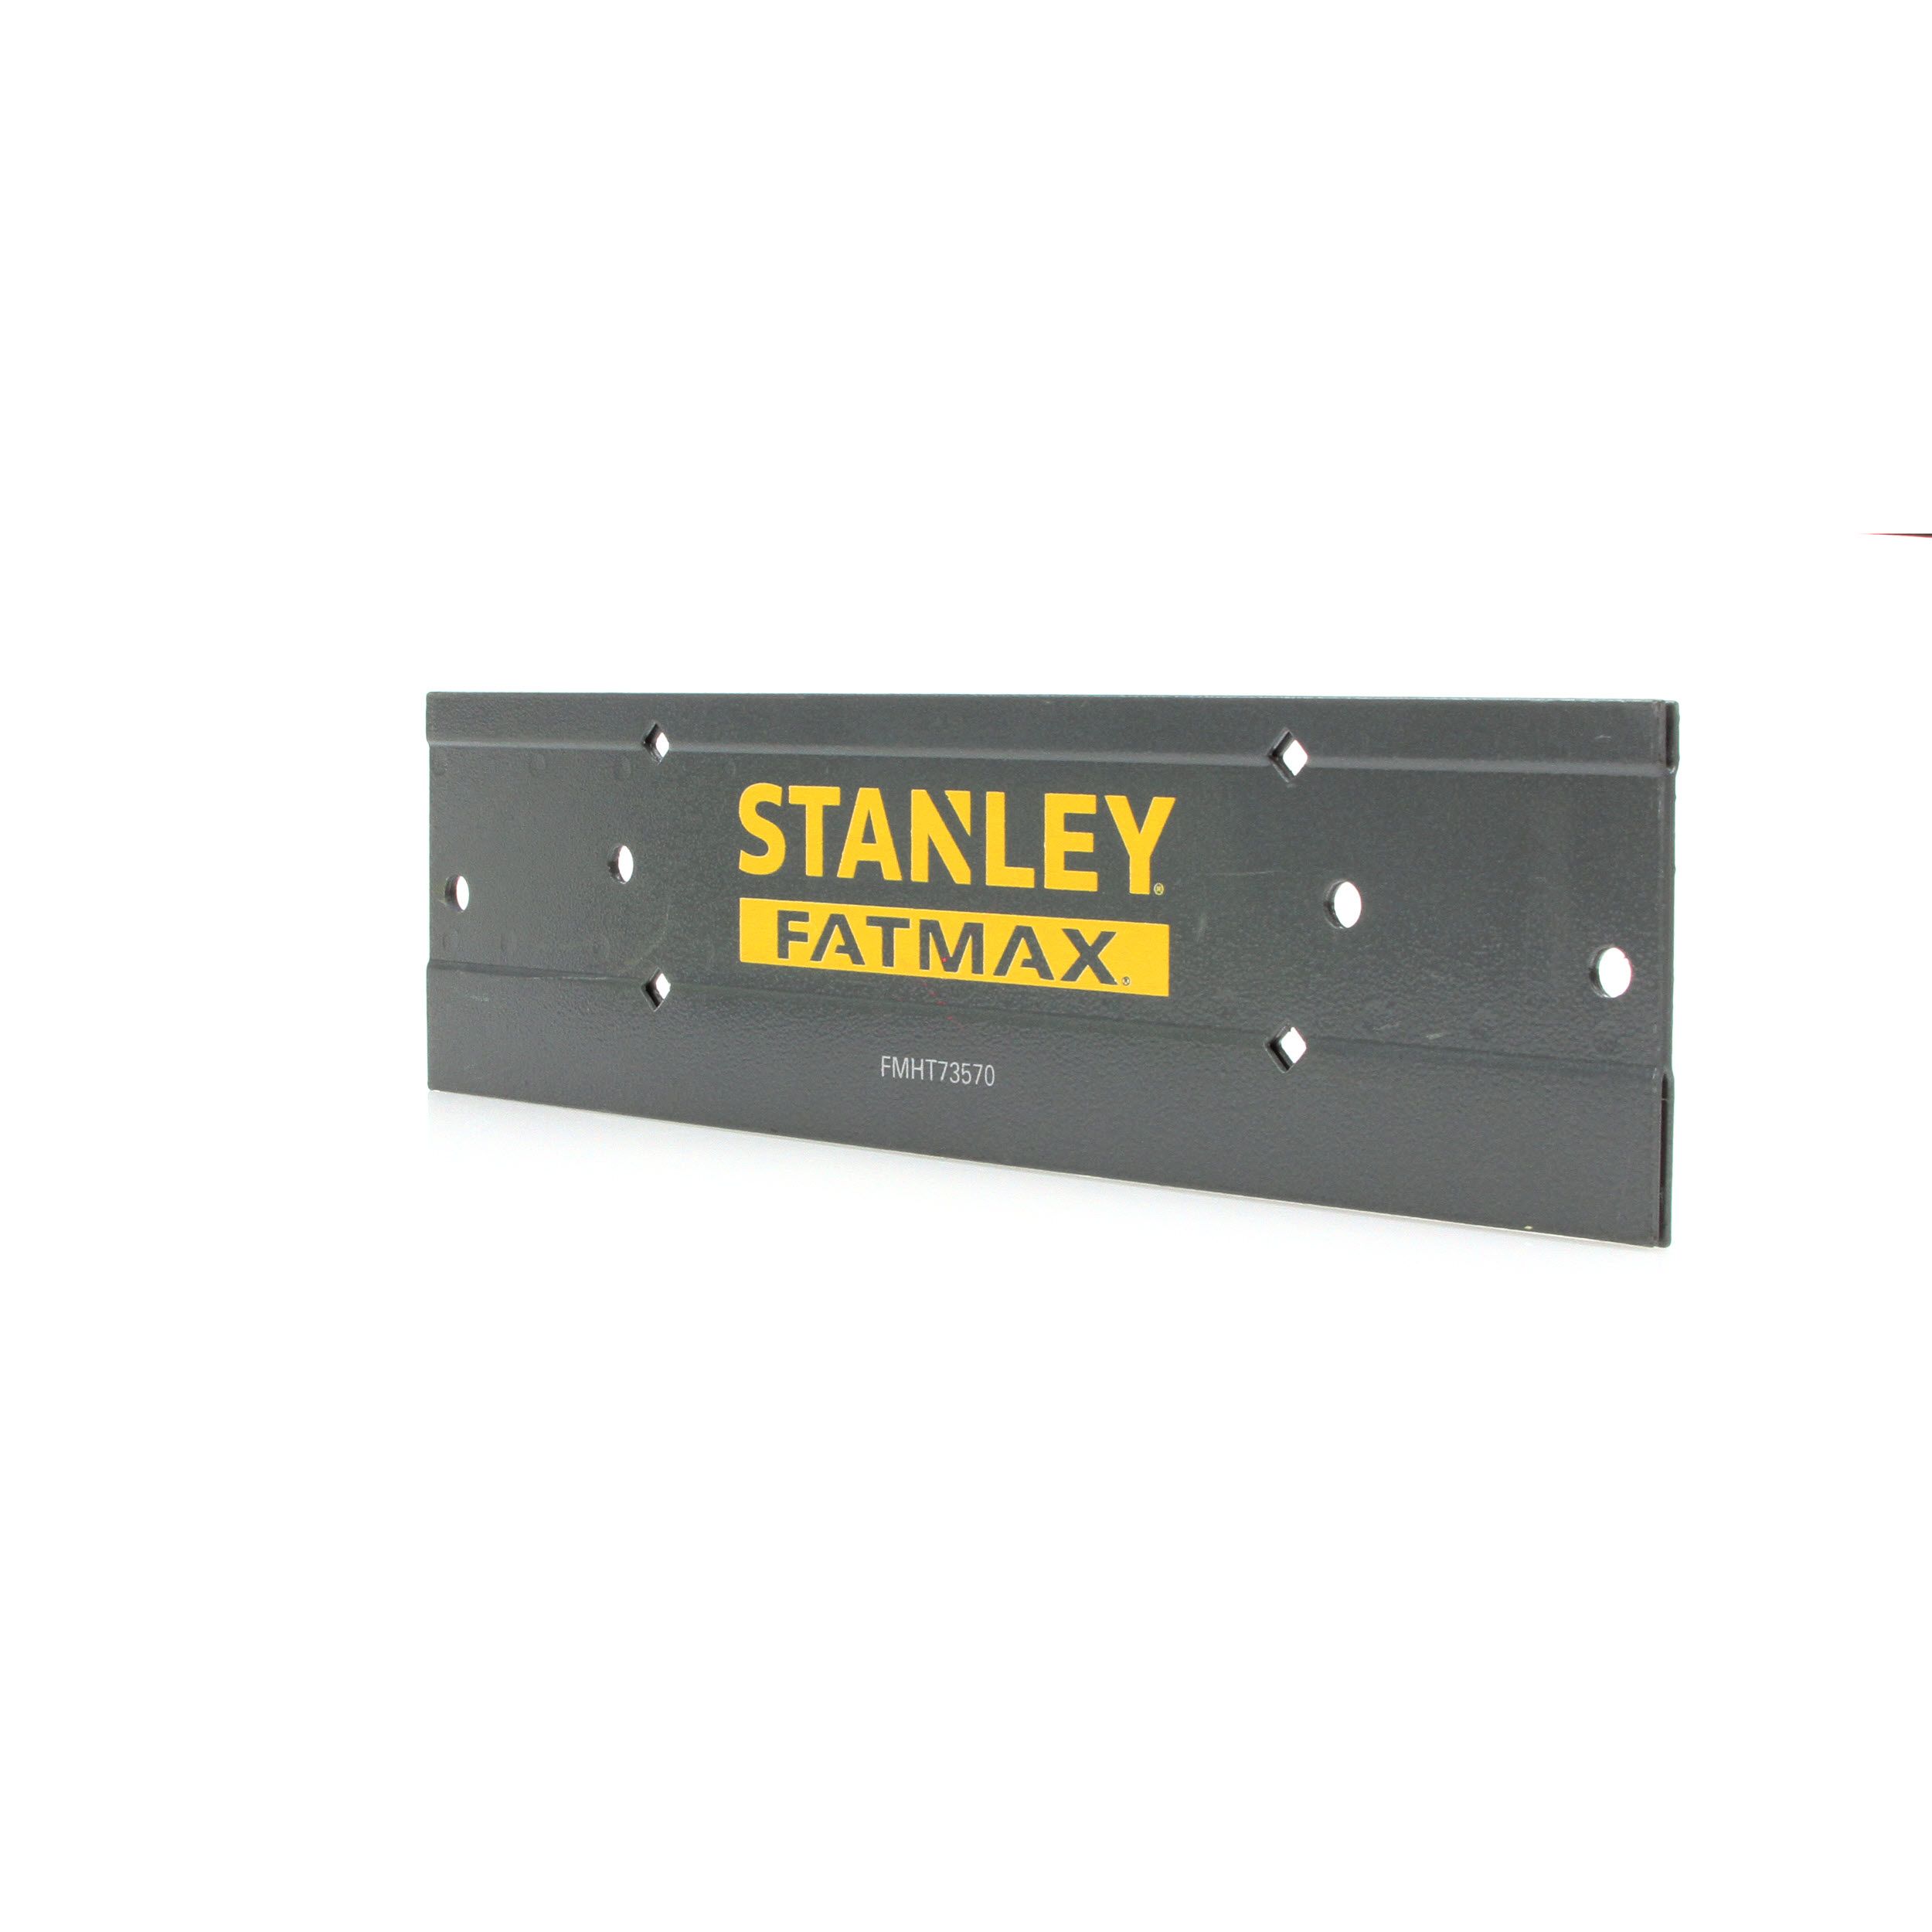 FMHT73570 Stanley FATMAX 12" Sheet Metal Folding Tool Bender Flashing Fascia 